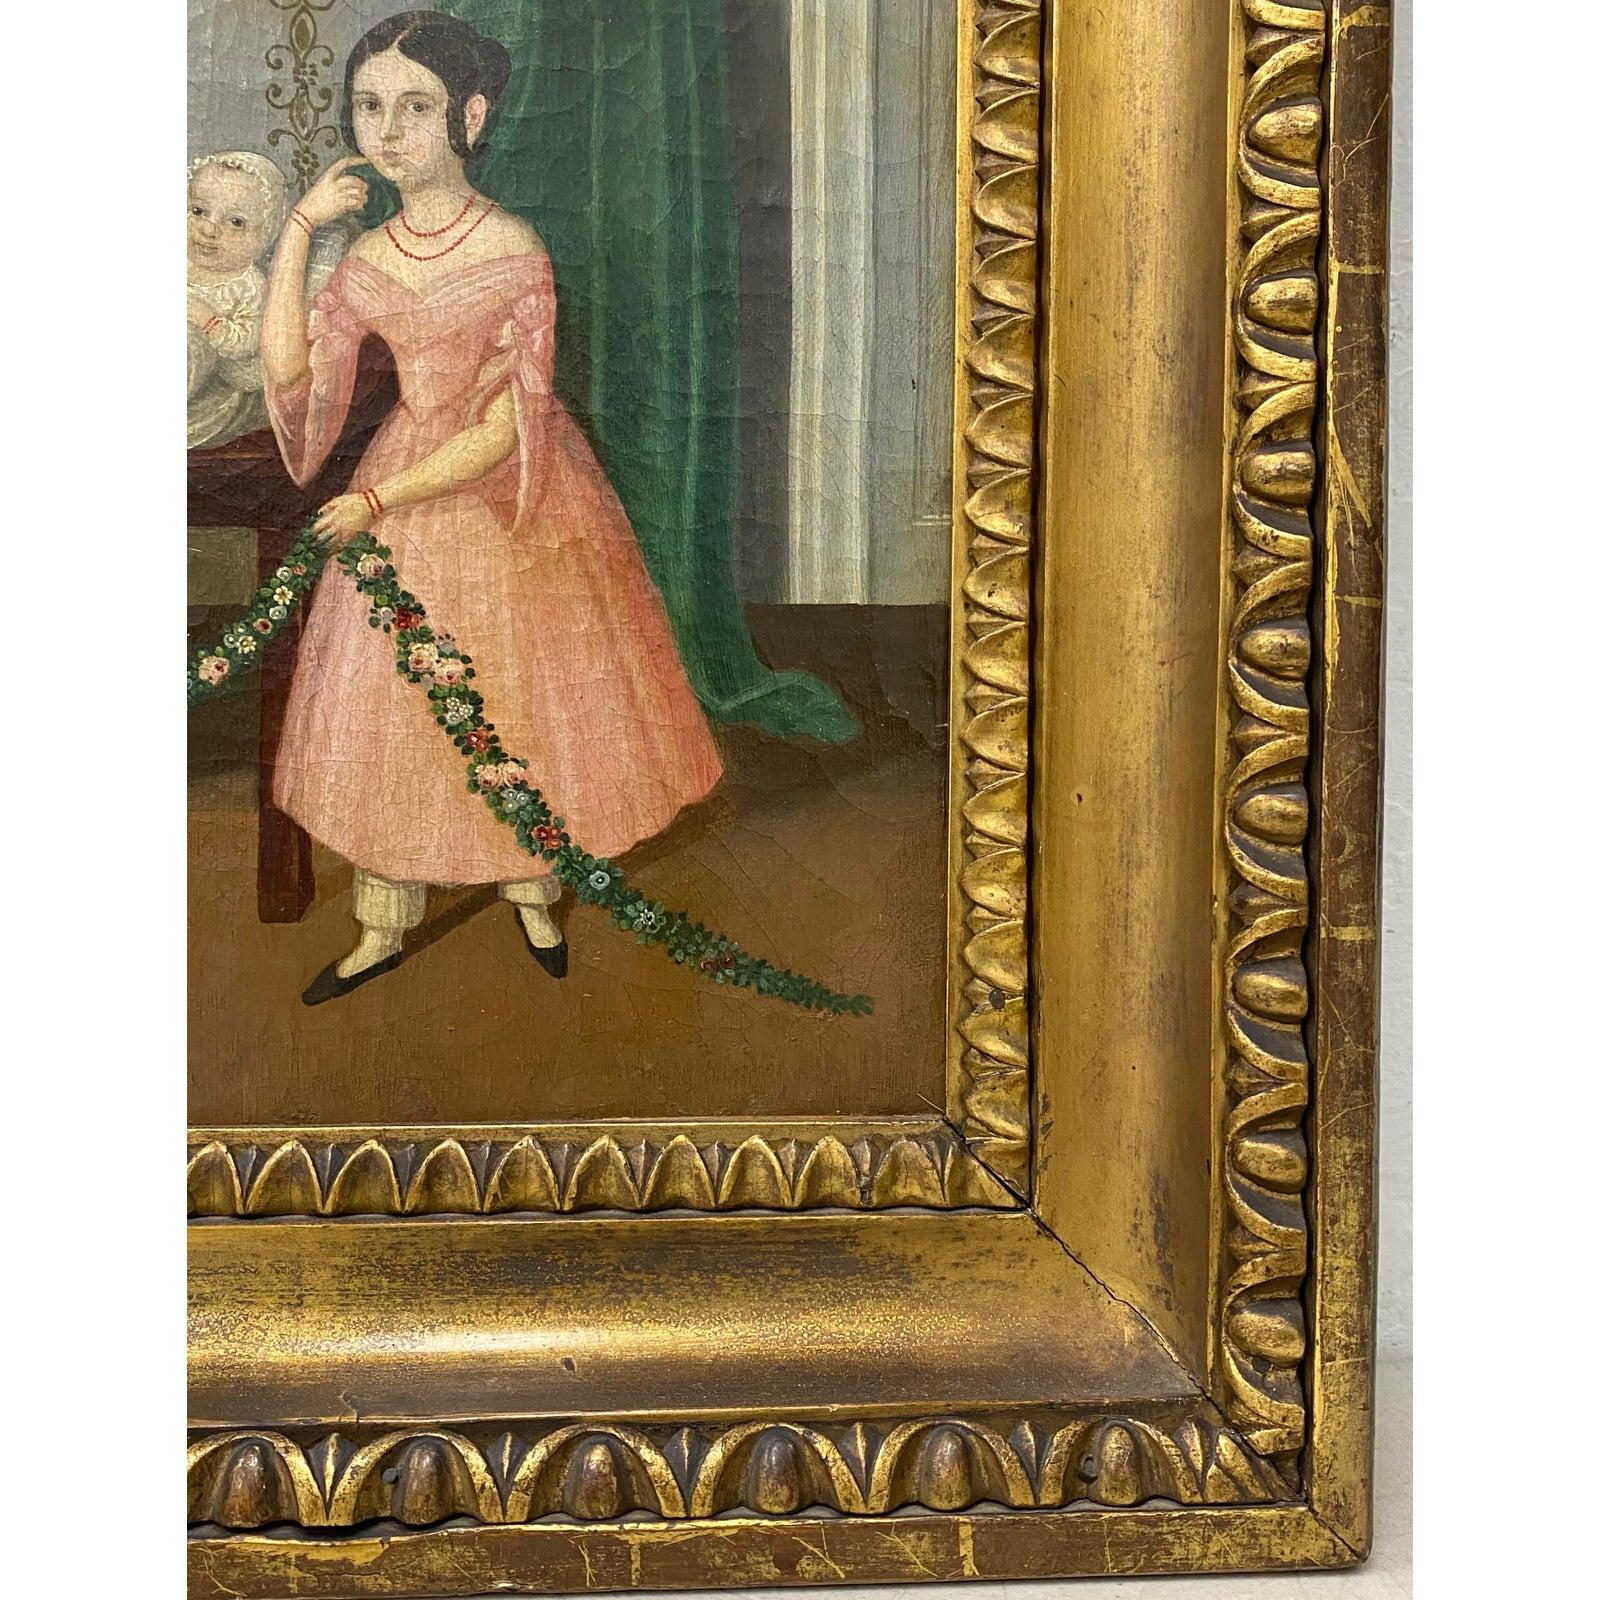 Portrait de famille à l'huile du milieu du 19ème siècle C.1840

Remarquable portrait à l'huile d'une jeune famille révélant une peinture de la matriarche de la famille, peut-être un portrait de deuil.

Huile originale sur toile avec des notes au